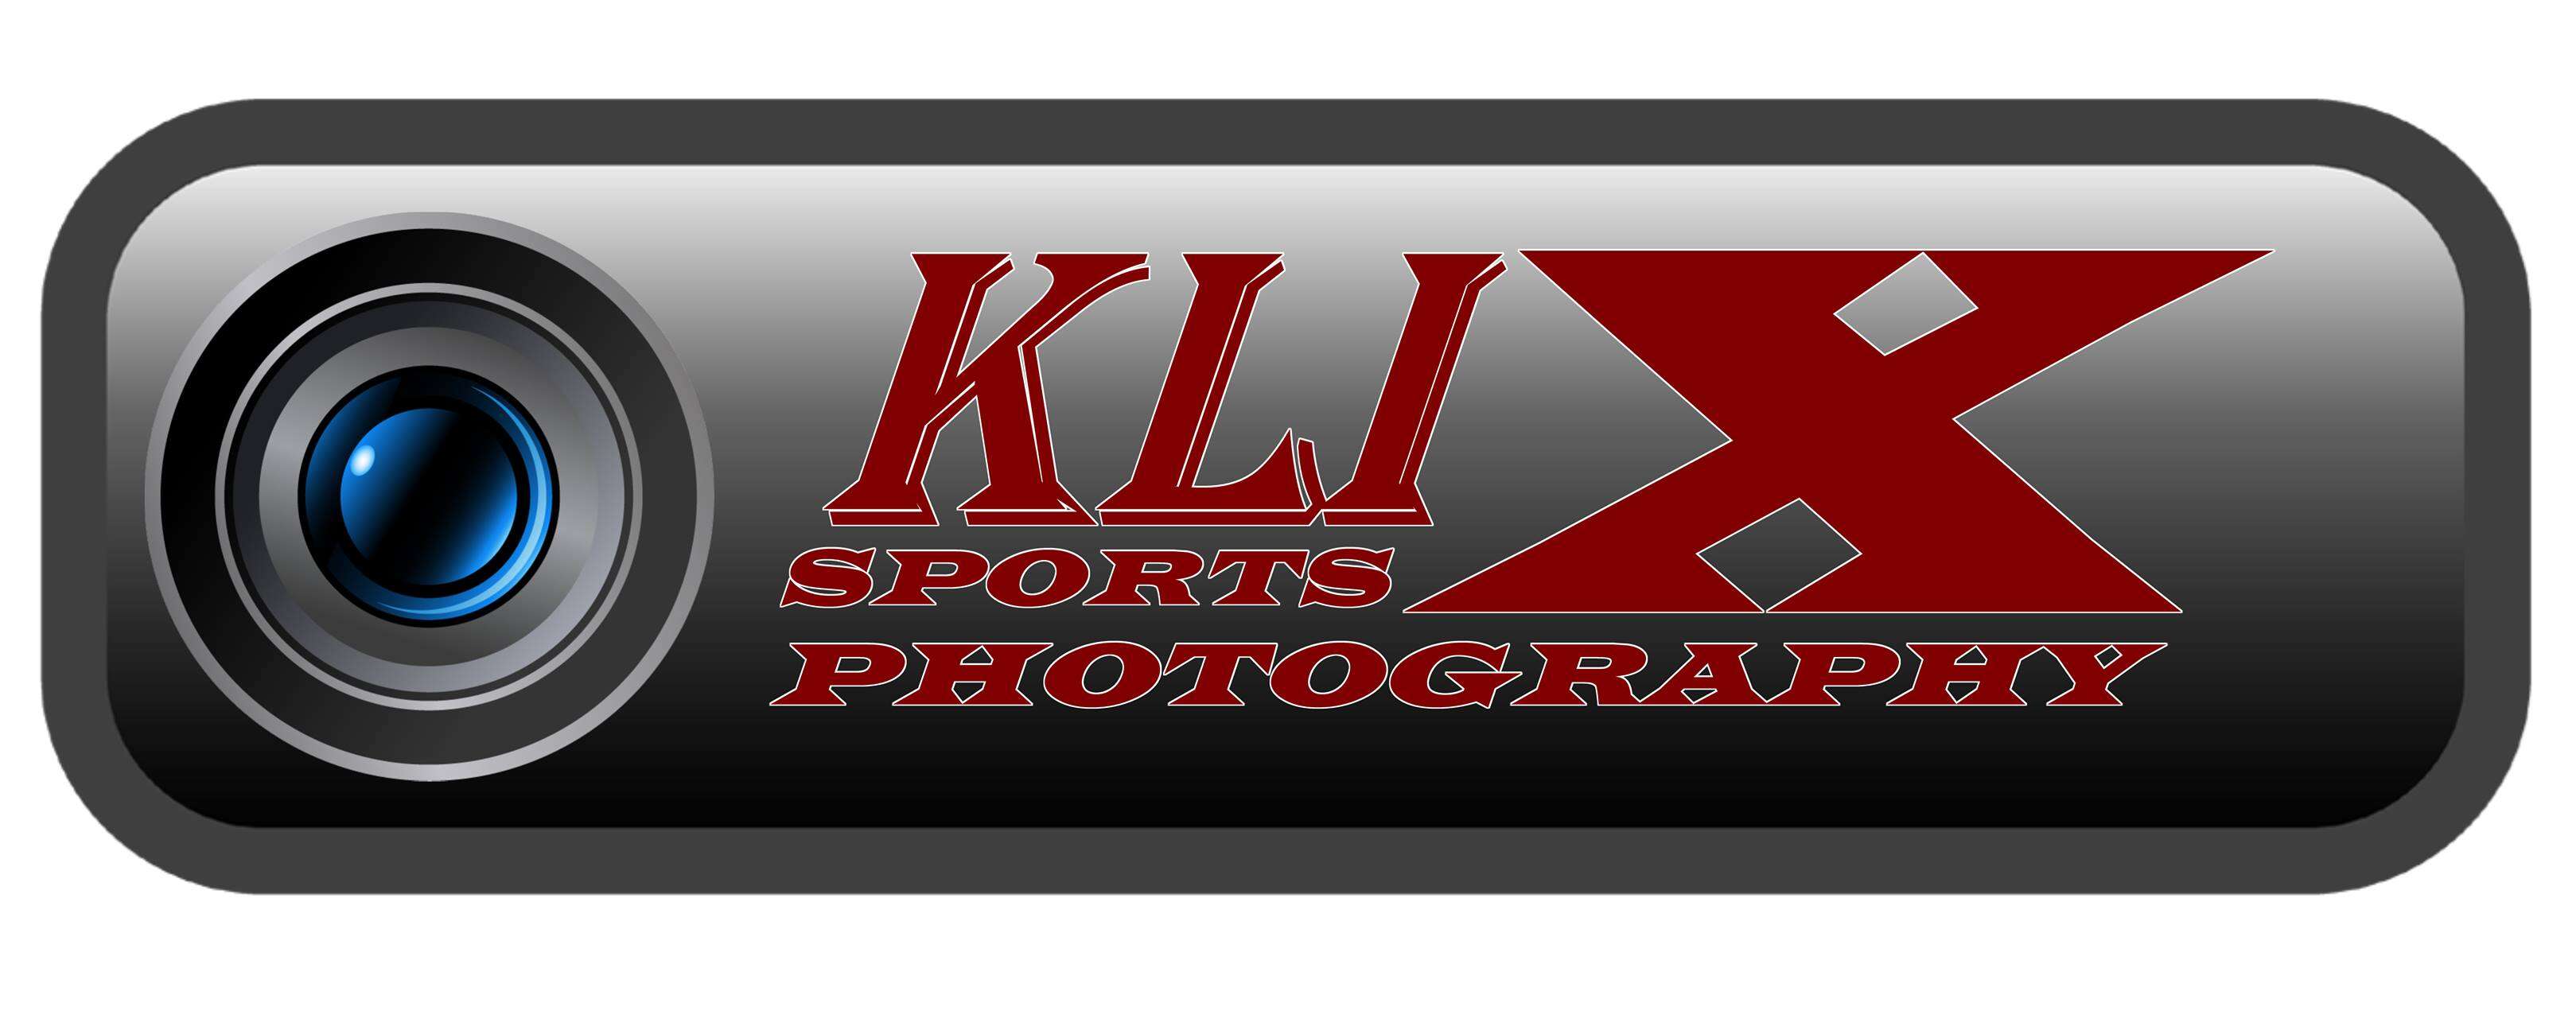 Klix Sports Photography